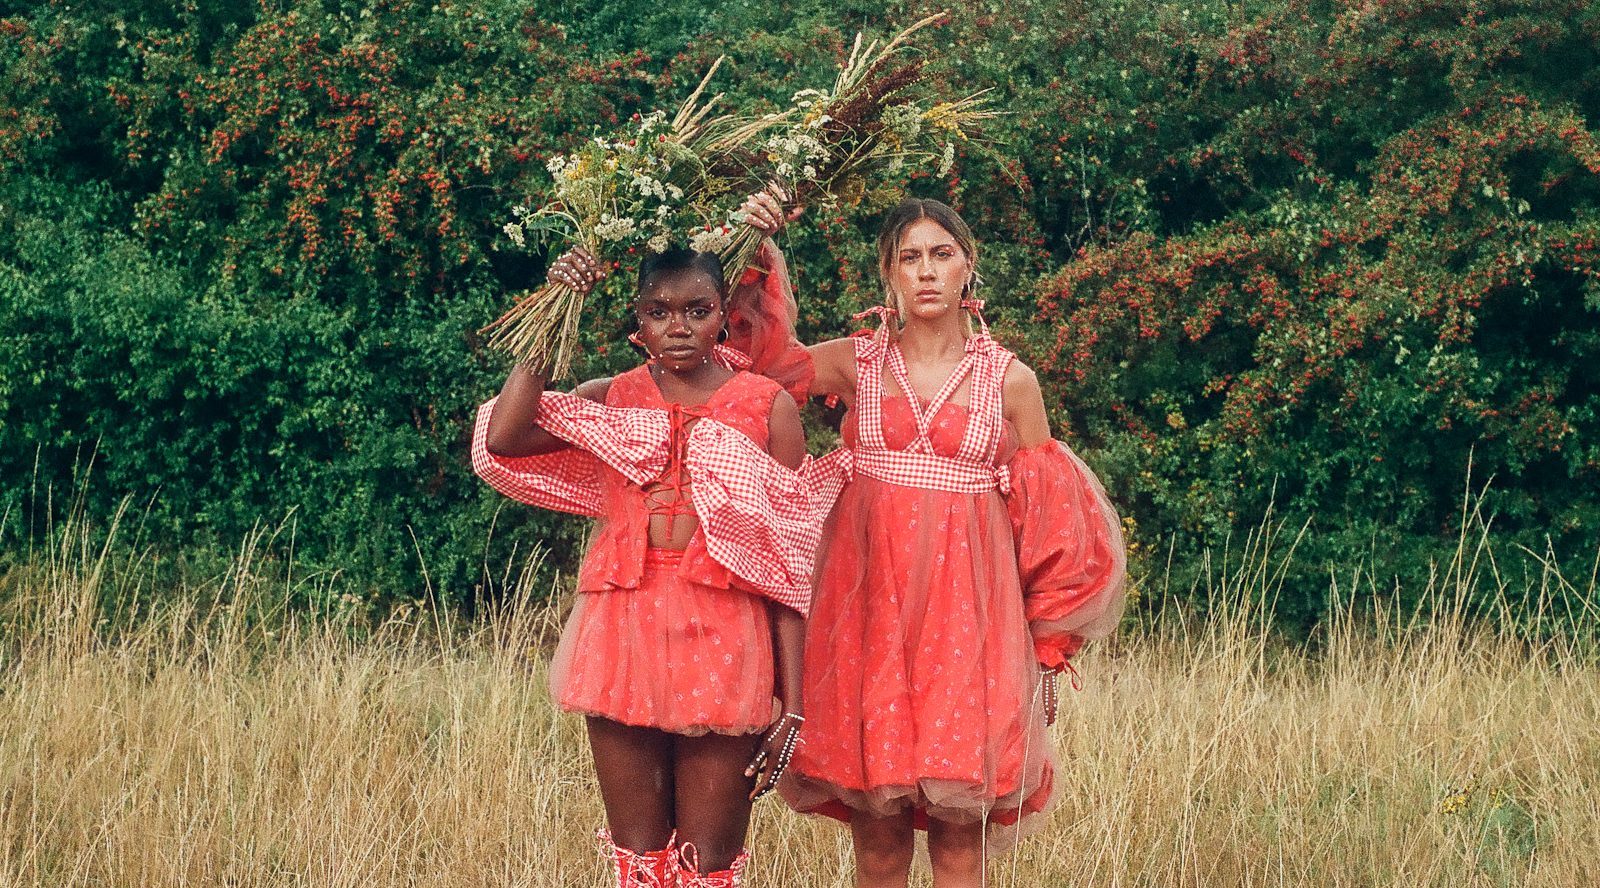 Fotografía analógica en la que se retrata a dos mujeres vestidas de rojo en un entorno natural